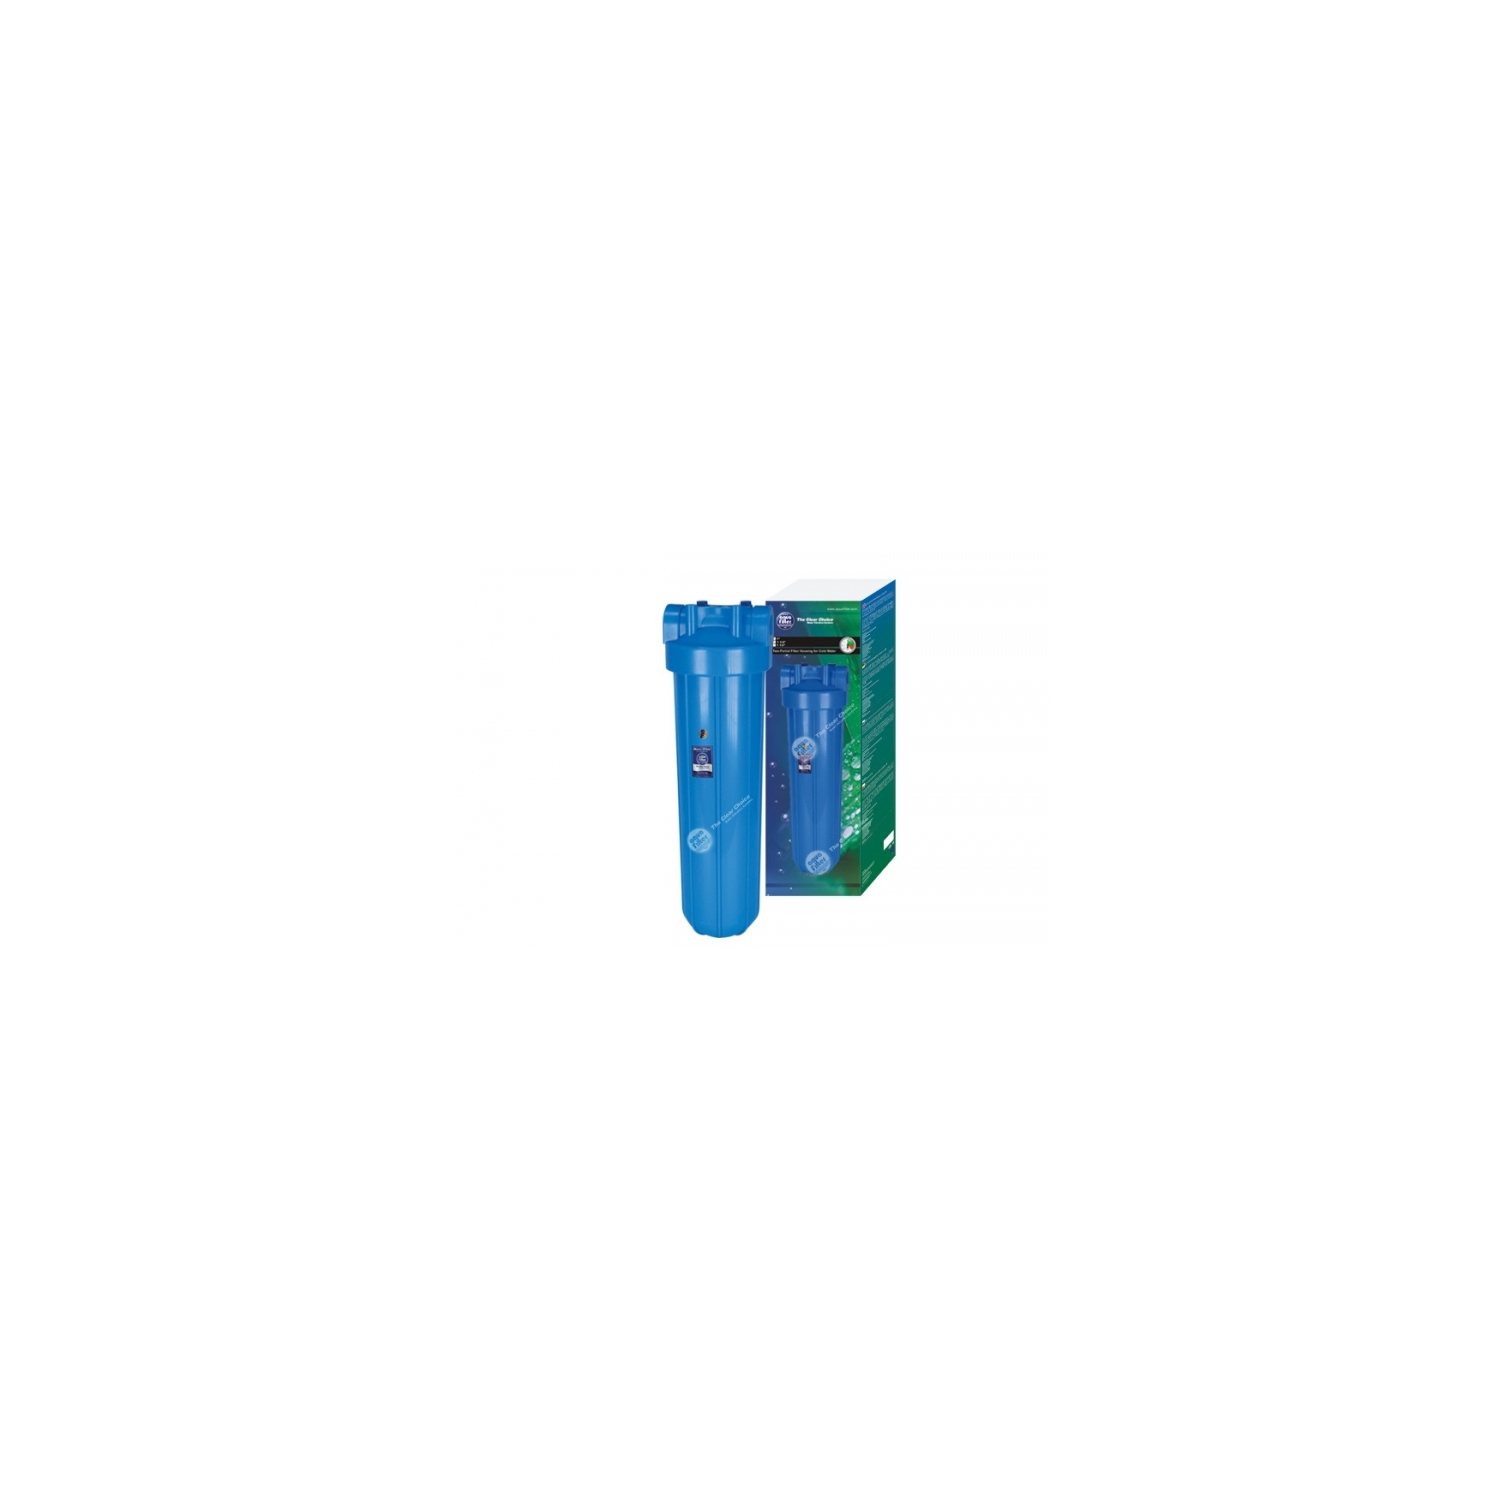 Filterschlüssel und Wandhalter Filterpatrone Big Blue 20 1IG Filtergehäuse mit Filter Vorfilter Hauswasserfilter Wasserfilter 